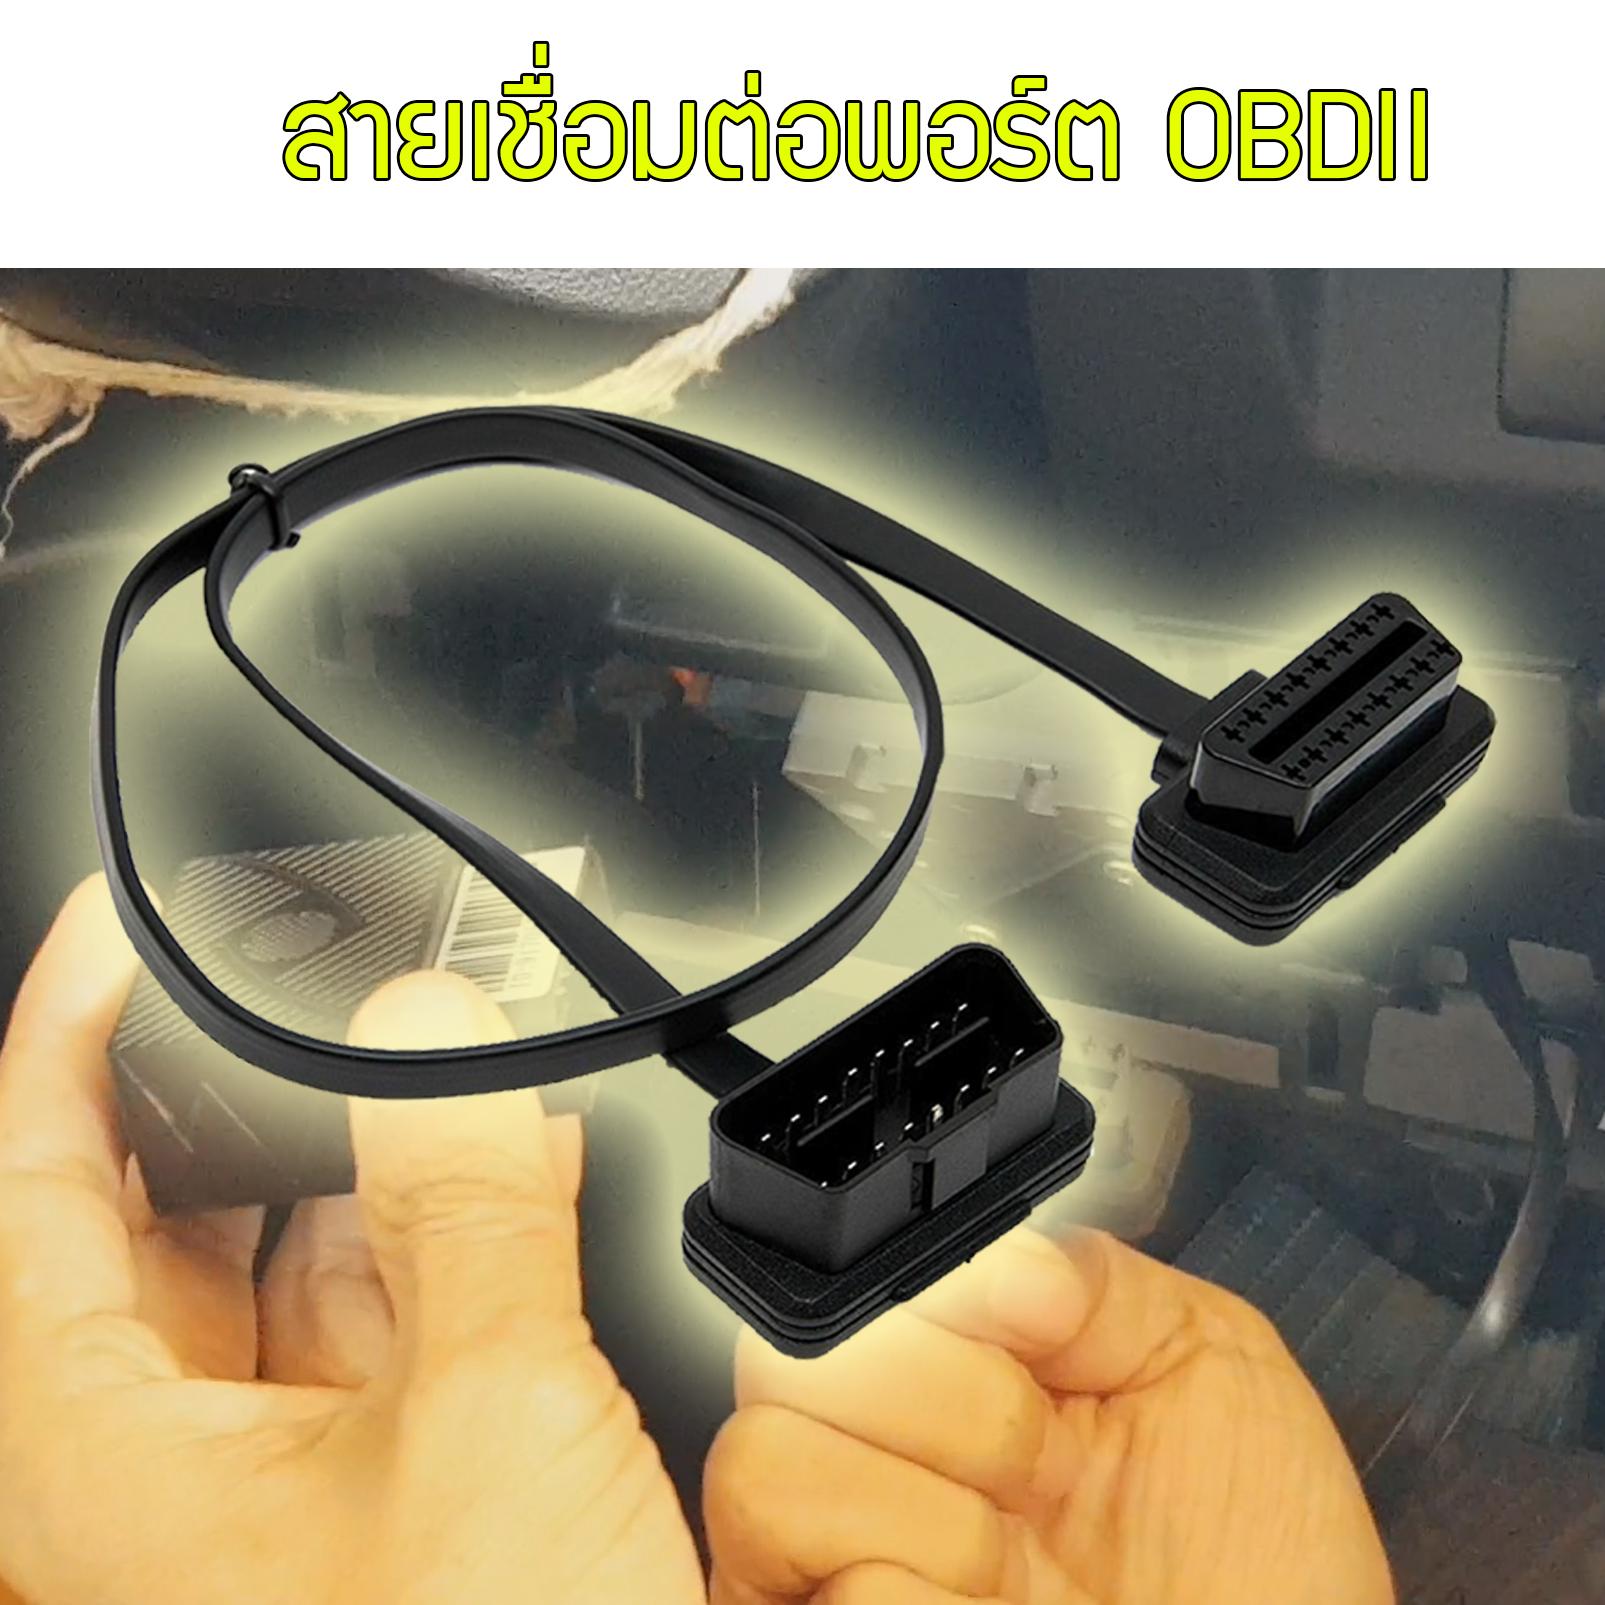 สายเชื่อมต่อ OBD2 port หรือ สายต่อ OEM port สำหรับ GPS ติดตามรถรุ่น ST902